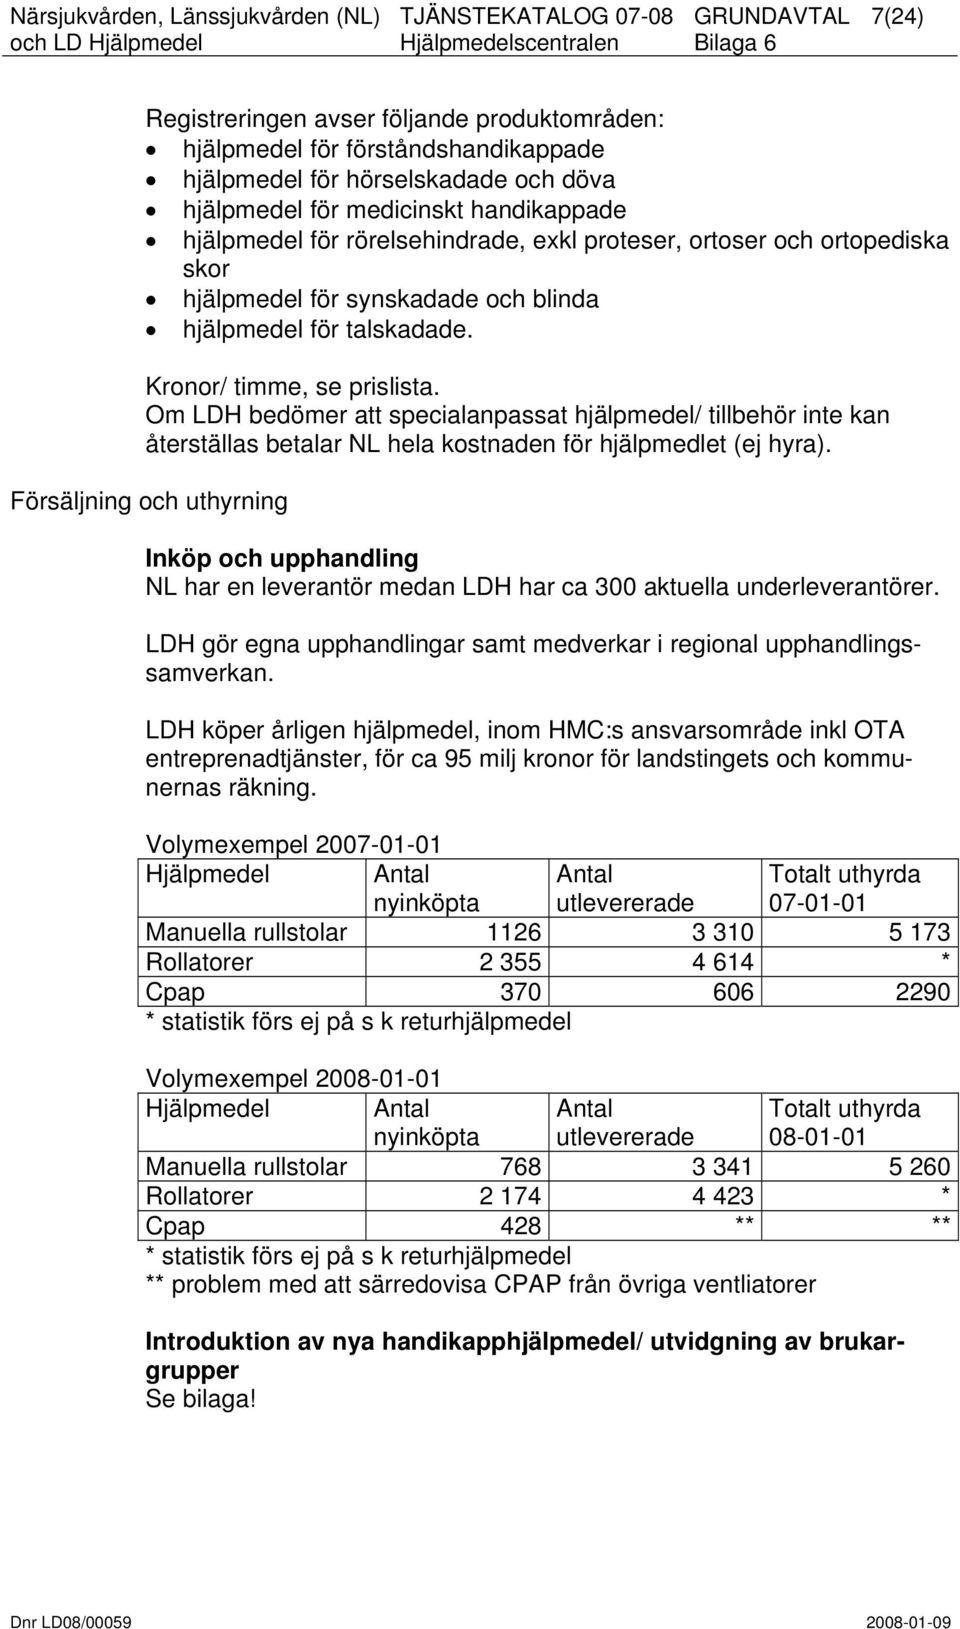 Om LDH bedömer att specialanpassat hjälpmedel/ tillbehör inte kan återställas betalar NL hela kostnaden för hjälpmedlet (ej hyra).